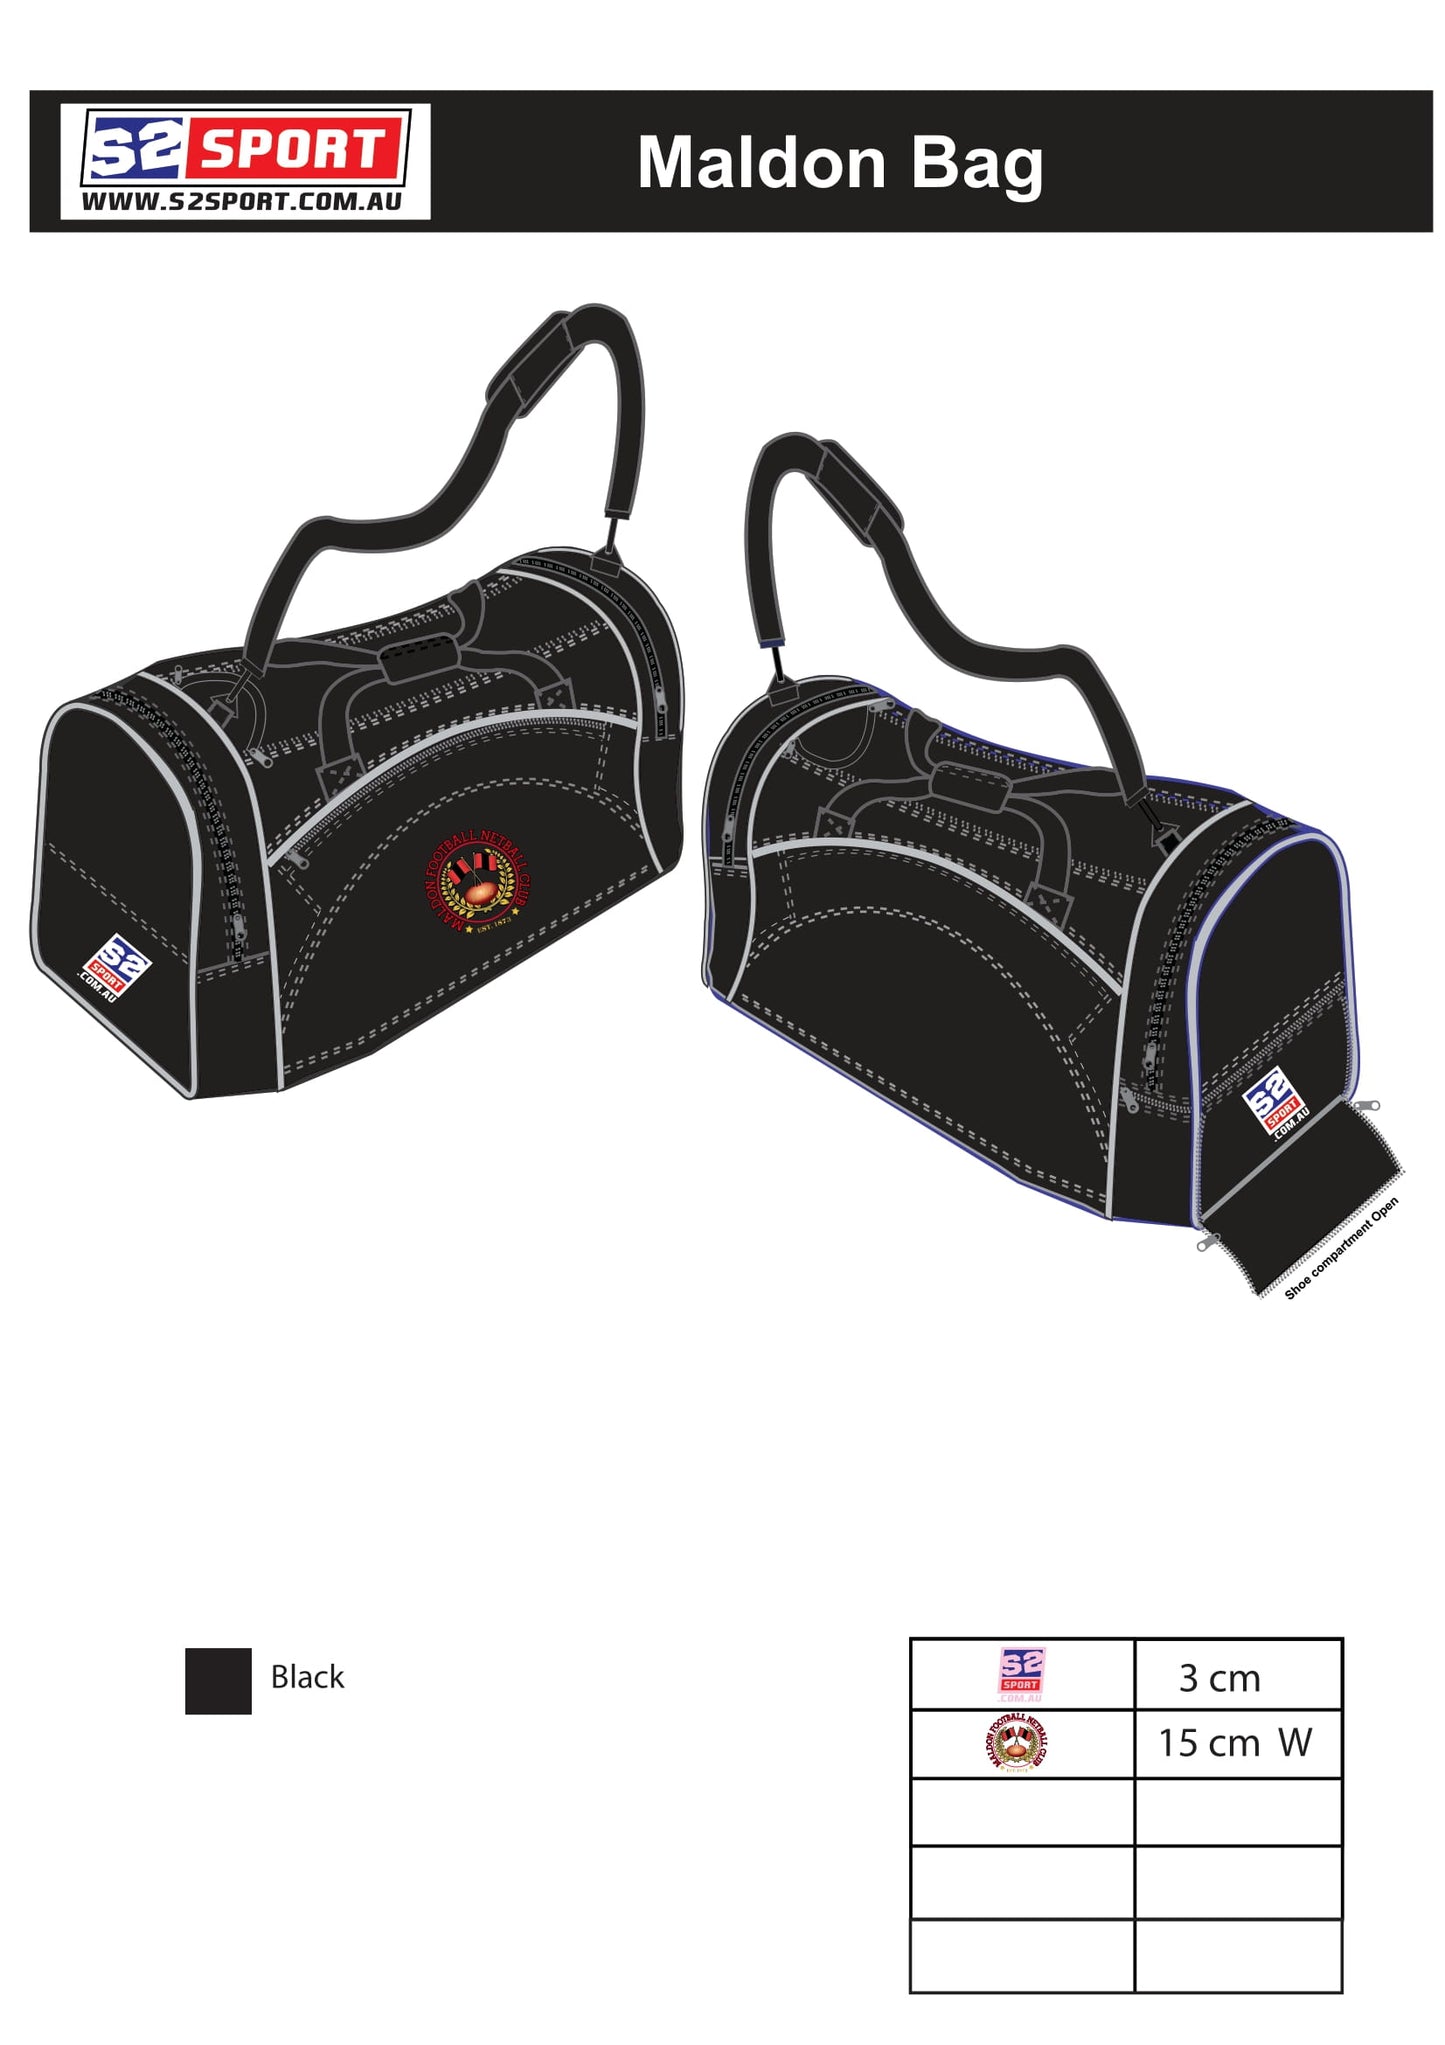 Maldon Football and Netball Club Bag & Back Pack